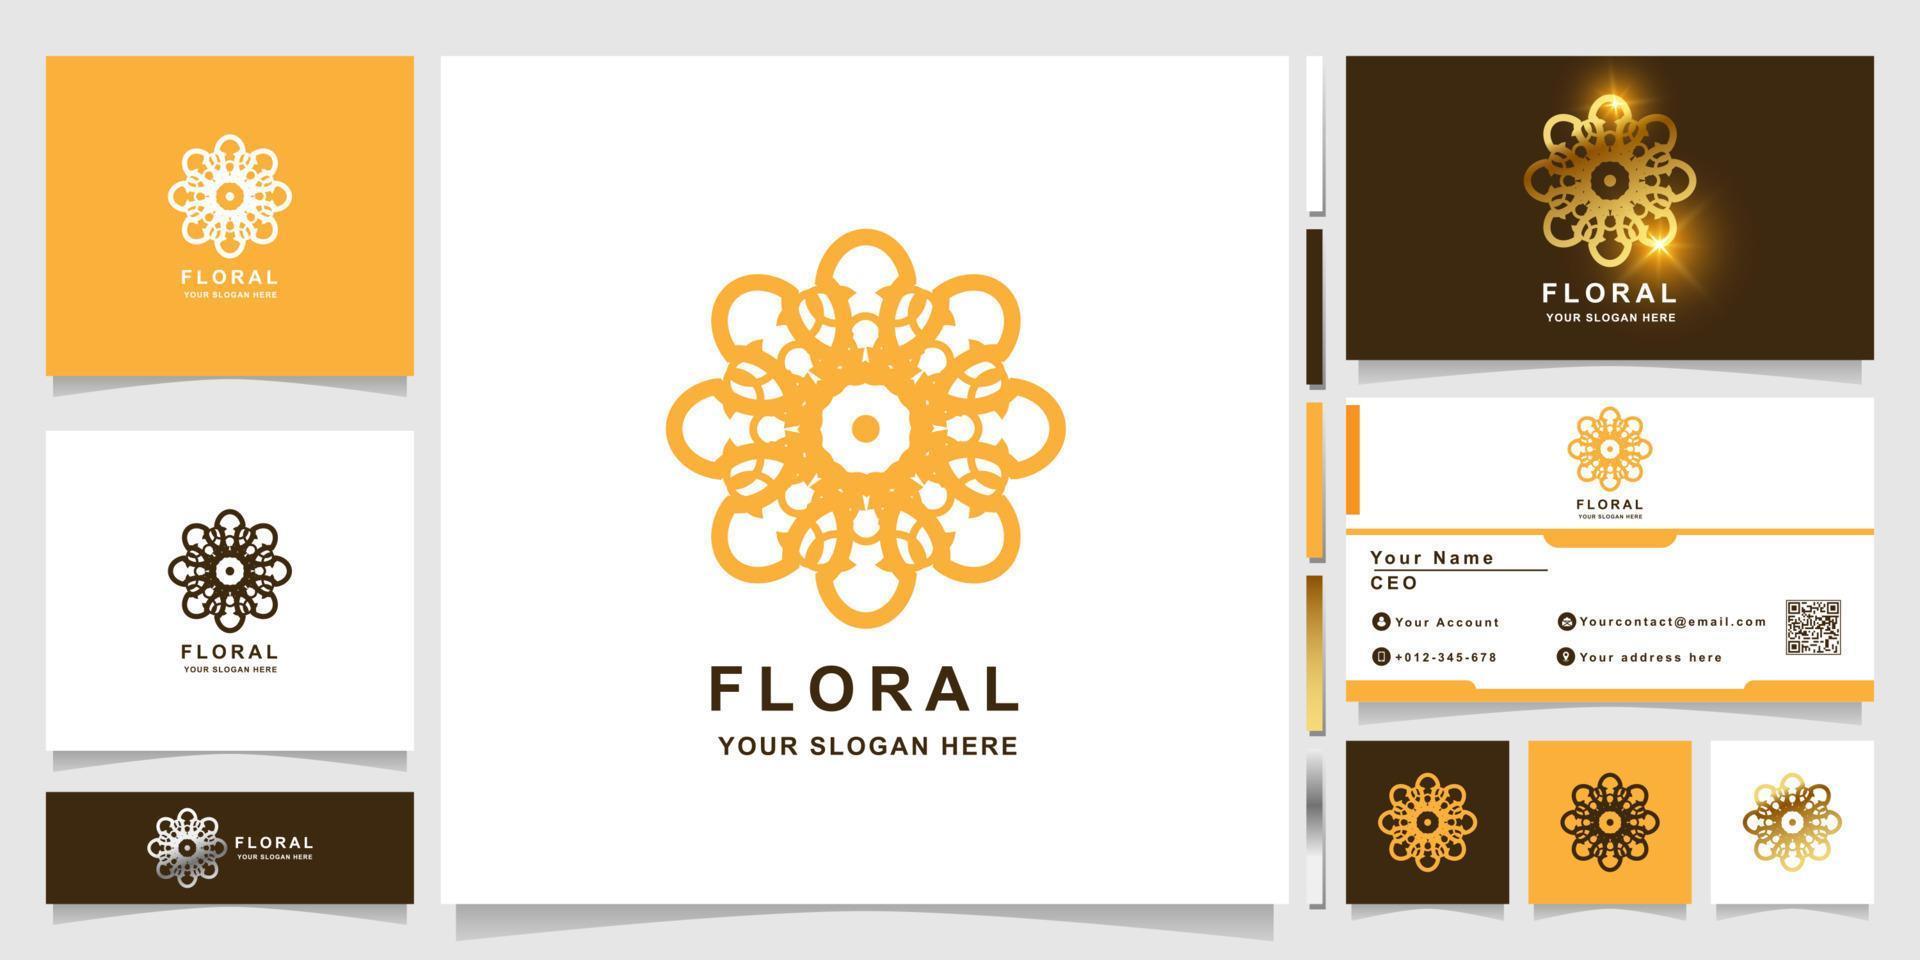 bloem, boetiek of ornament logo sjabloon met visitekaartje ontwerp. kan worden gebruikt voor spa-, salon-, schoonheids- of boetieklogo-ontwerp. vector